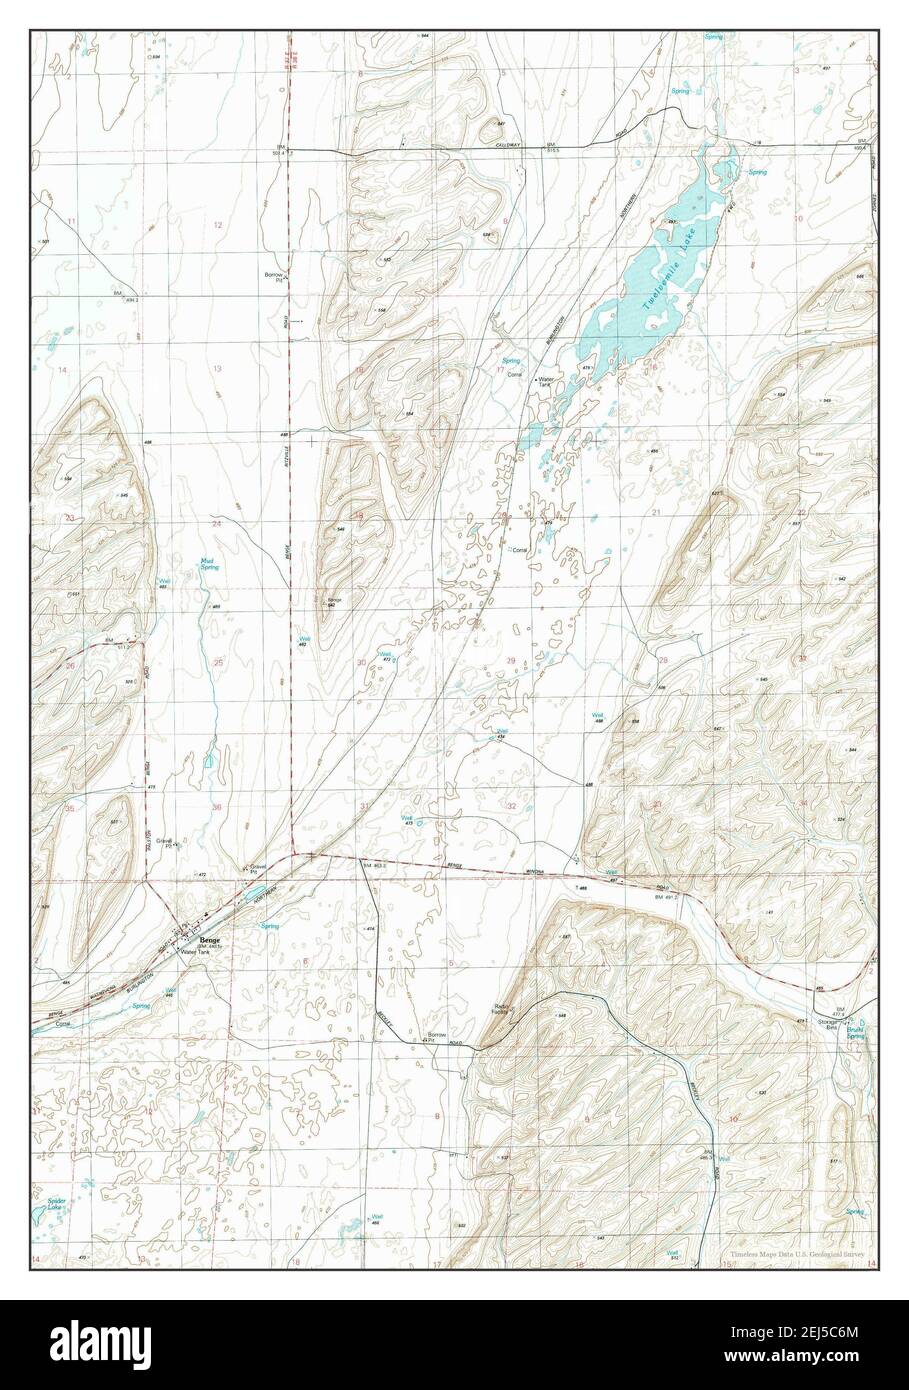 Benge, Washington, map 1981, 1:24000, United States of America by Timeless Maps, data U.S. Geological Survey Stock Photo